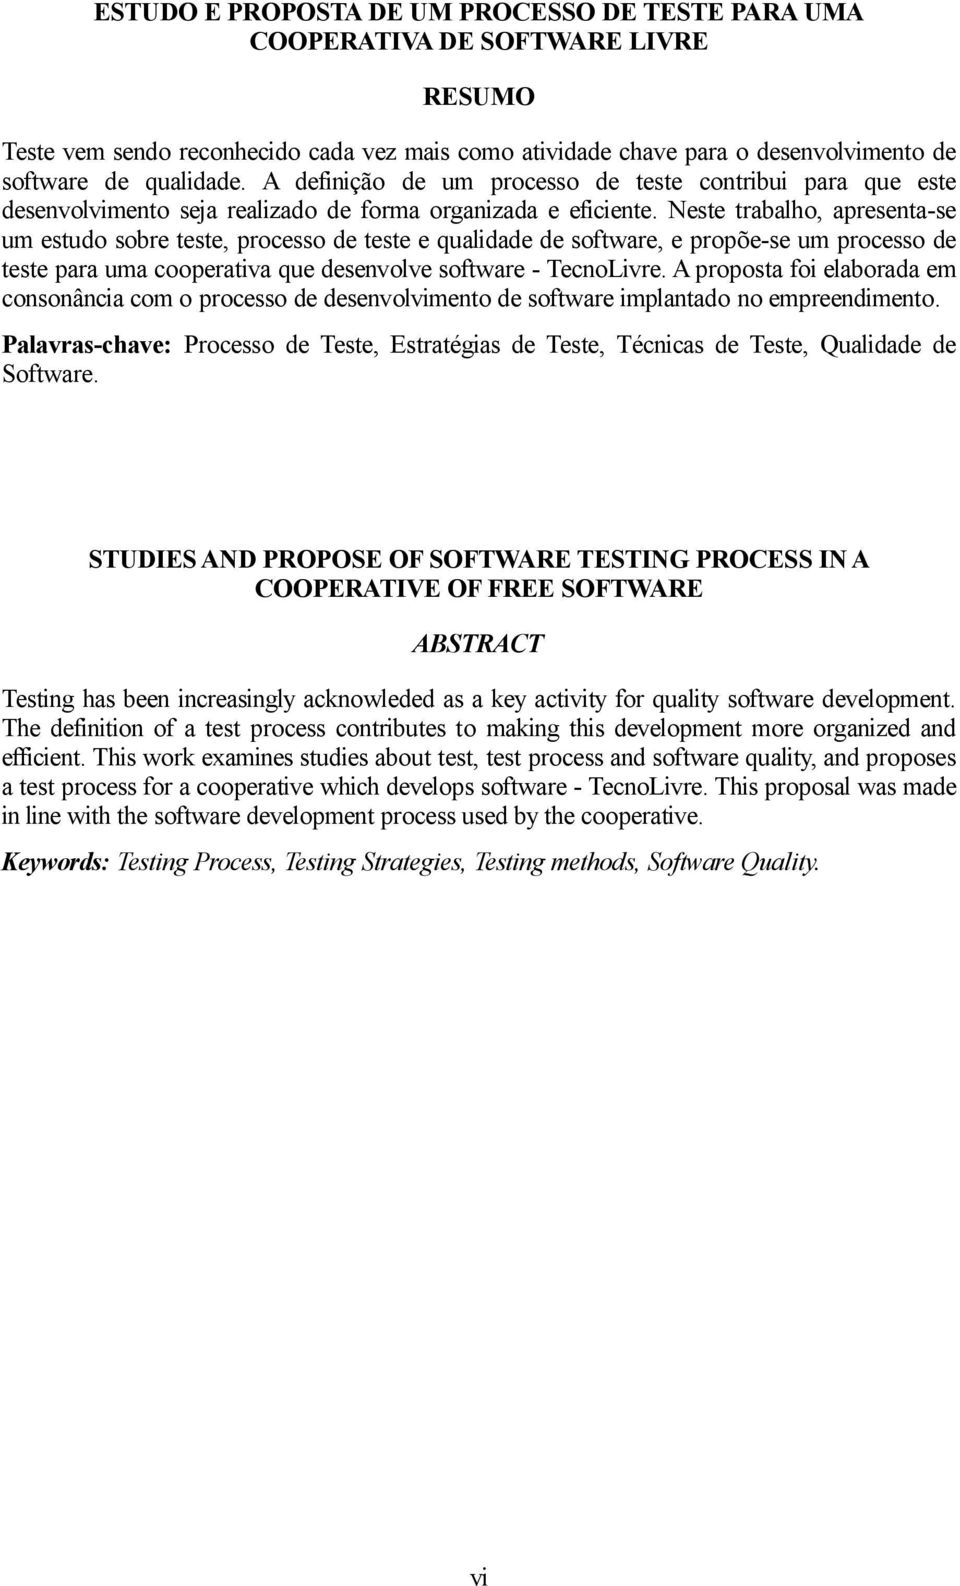 Neste trabalho, apresenta-se um estudo sobre teste, processo de teste e qualidade de software, e propõe-se um processo de teste para uma cooperativa que desenvolve software - TecnoLivre.